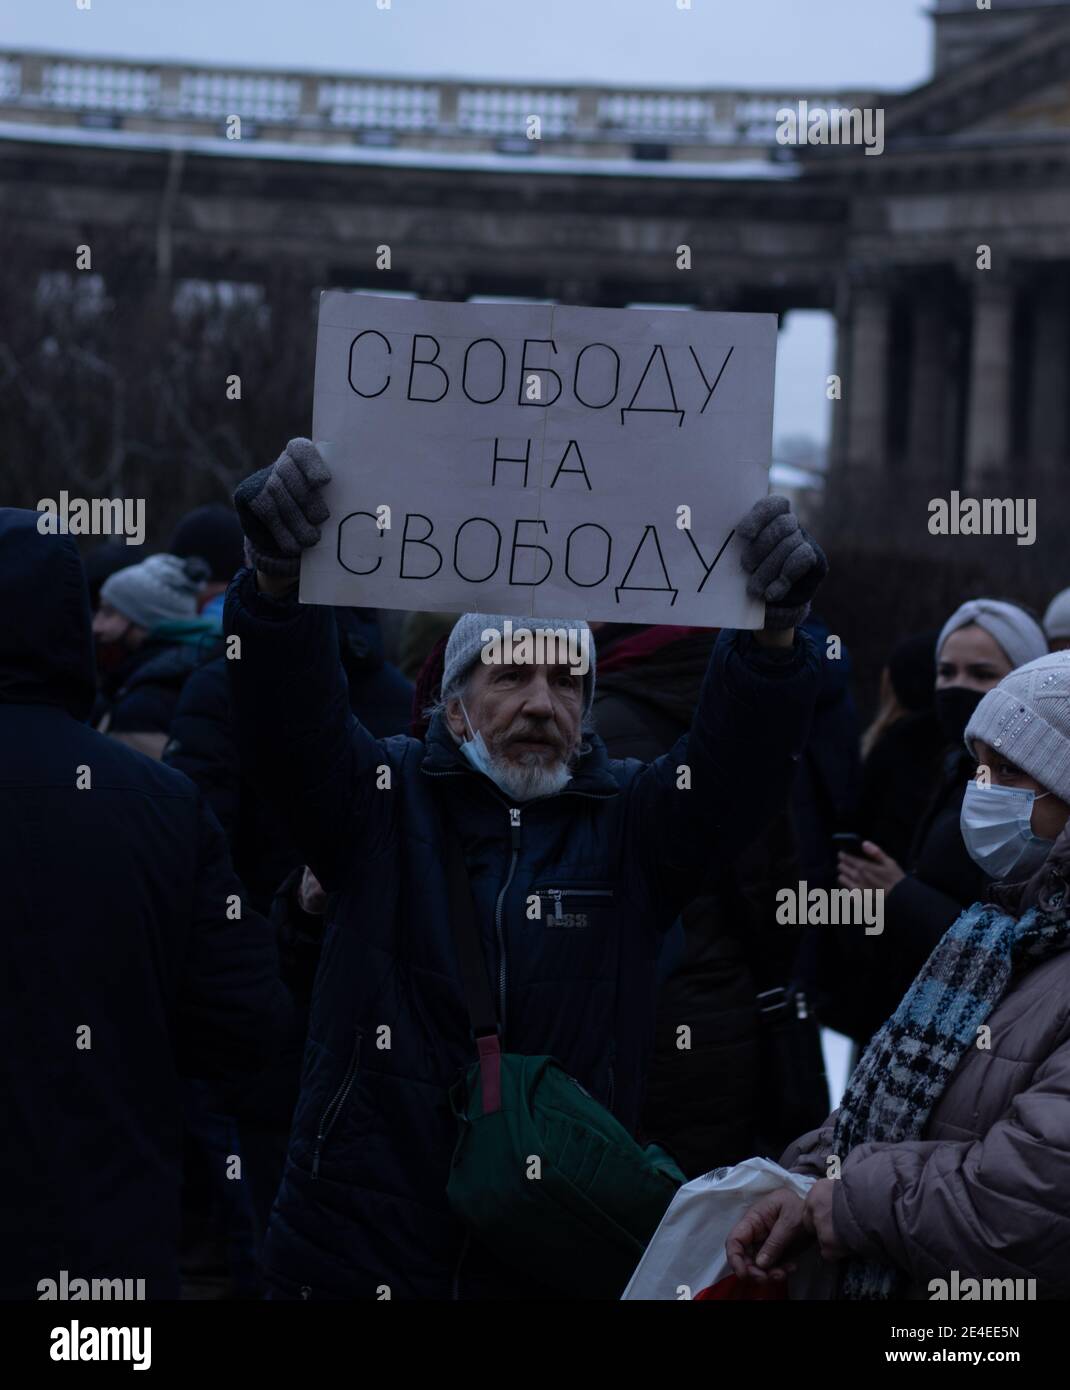 Saint-Pétersbourg, Russie - 23 janvier 2021 : marche de protestation en Russie. La police et les gens dans la rue. Foule de manifestants , éditorial illustratif. Banque D'Images